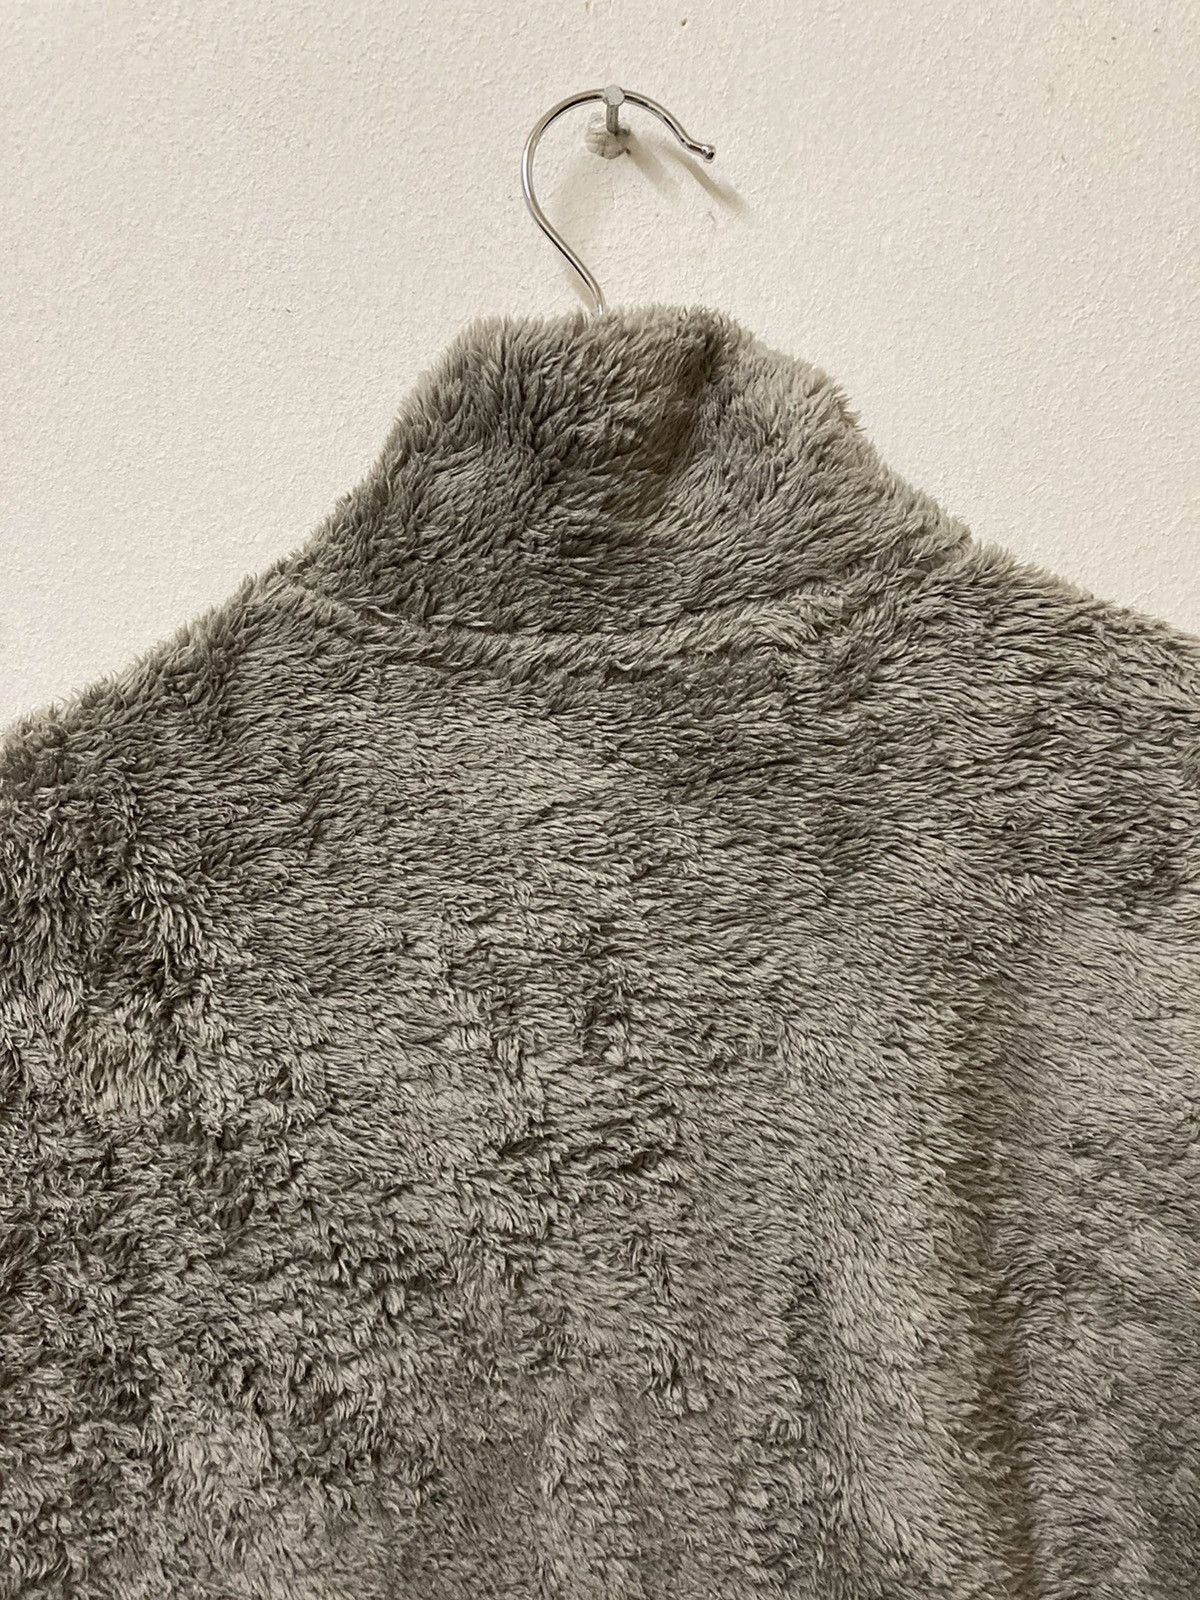 Uniqlo Fluffy Yarn Fleece Full Zipper Long Sleeve Jacket - 8